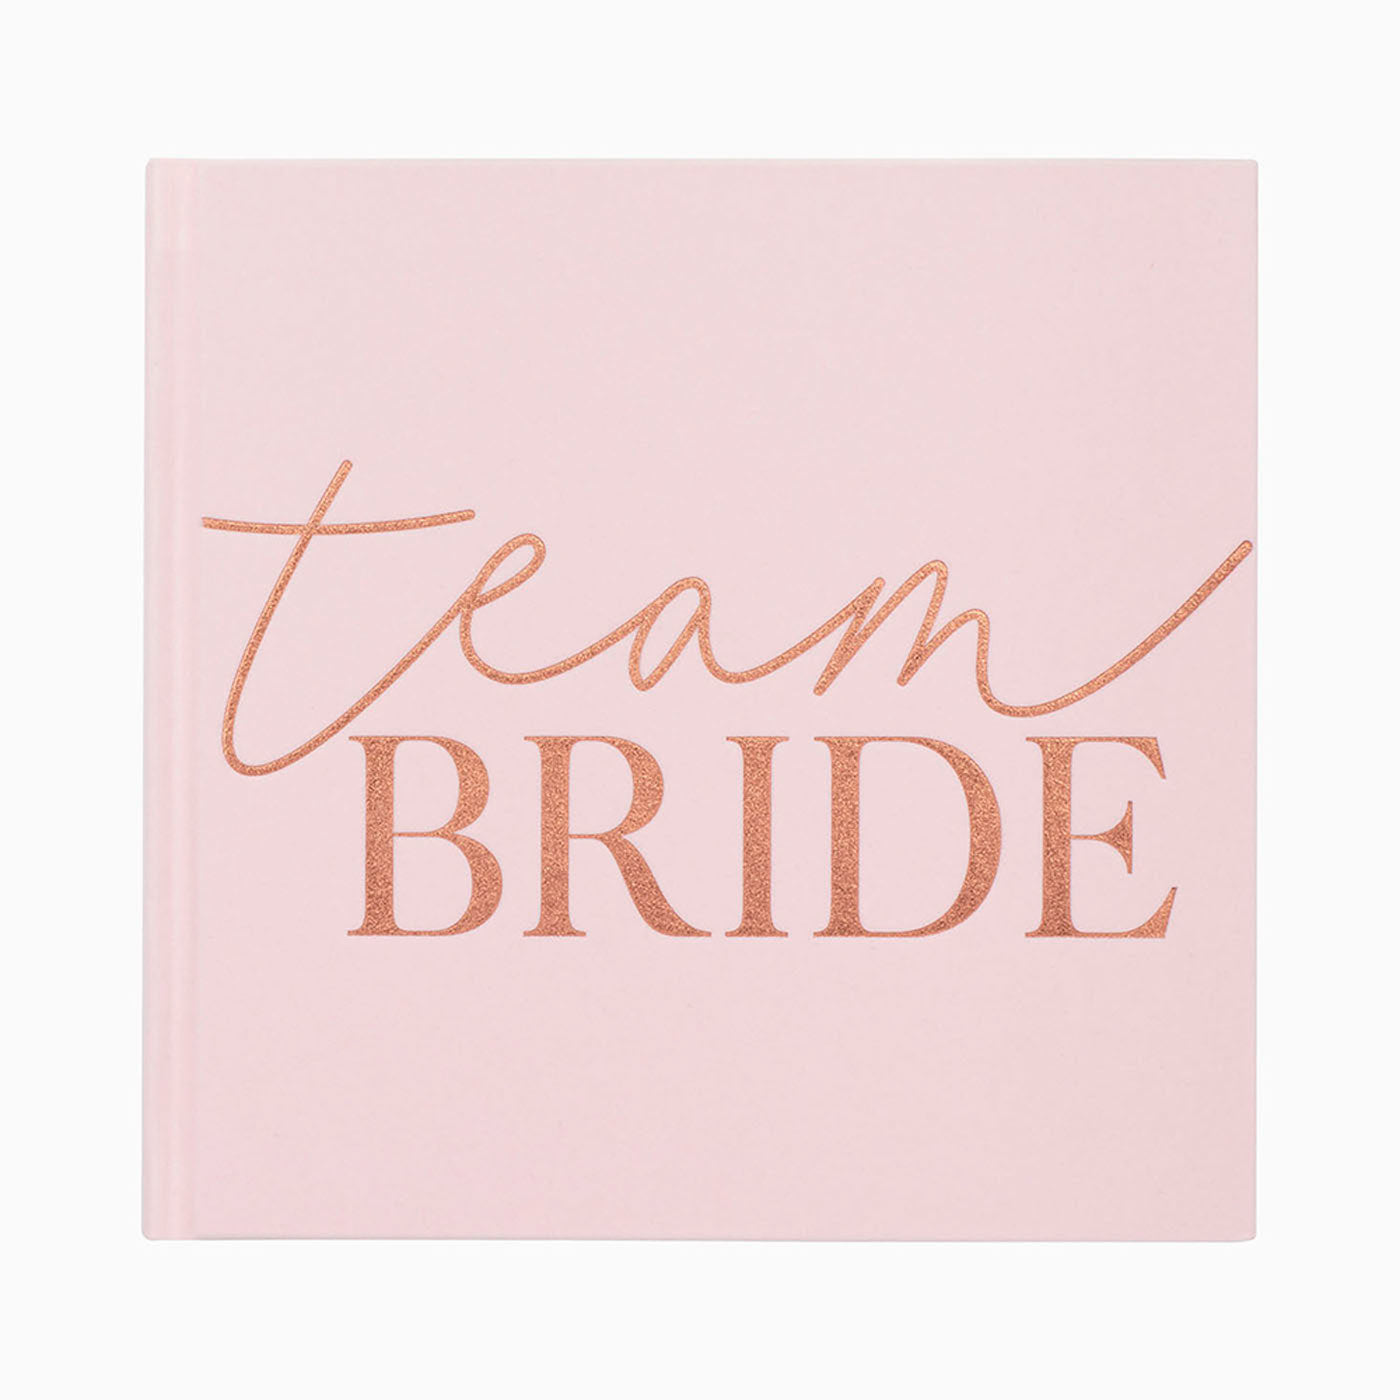 Book signatures "Team Bride"